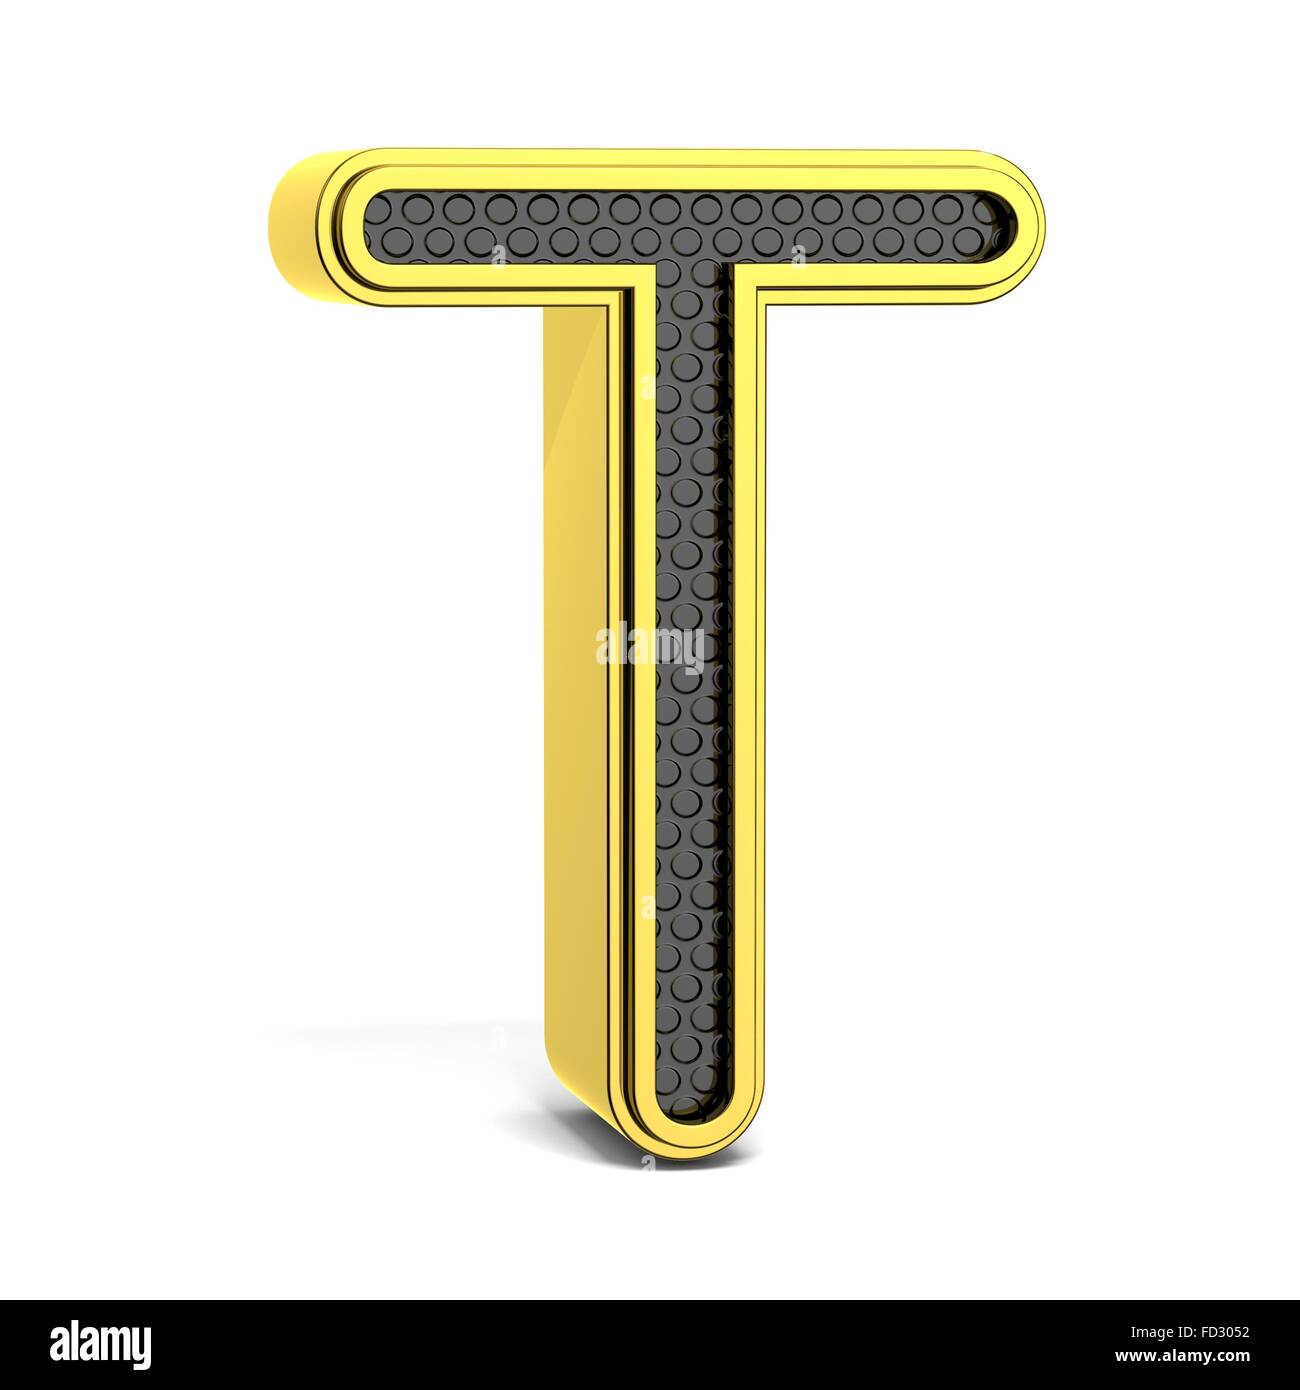 Goldene und schwarze Runde Alphabet. Buchstabe T. 3D render Abbildung isoliert auf weißem Hintergrund mit weichen Schatten Stockfoto